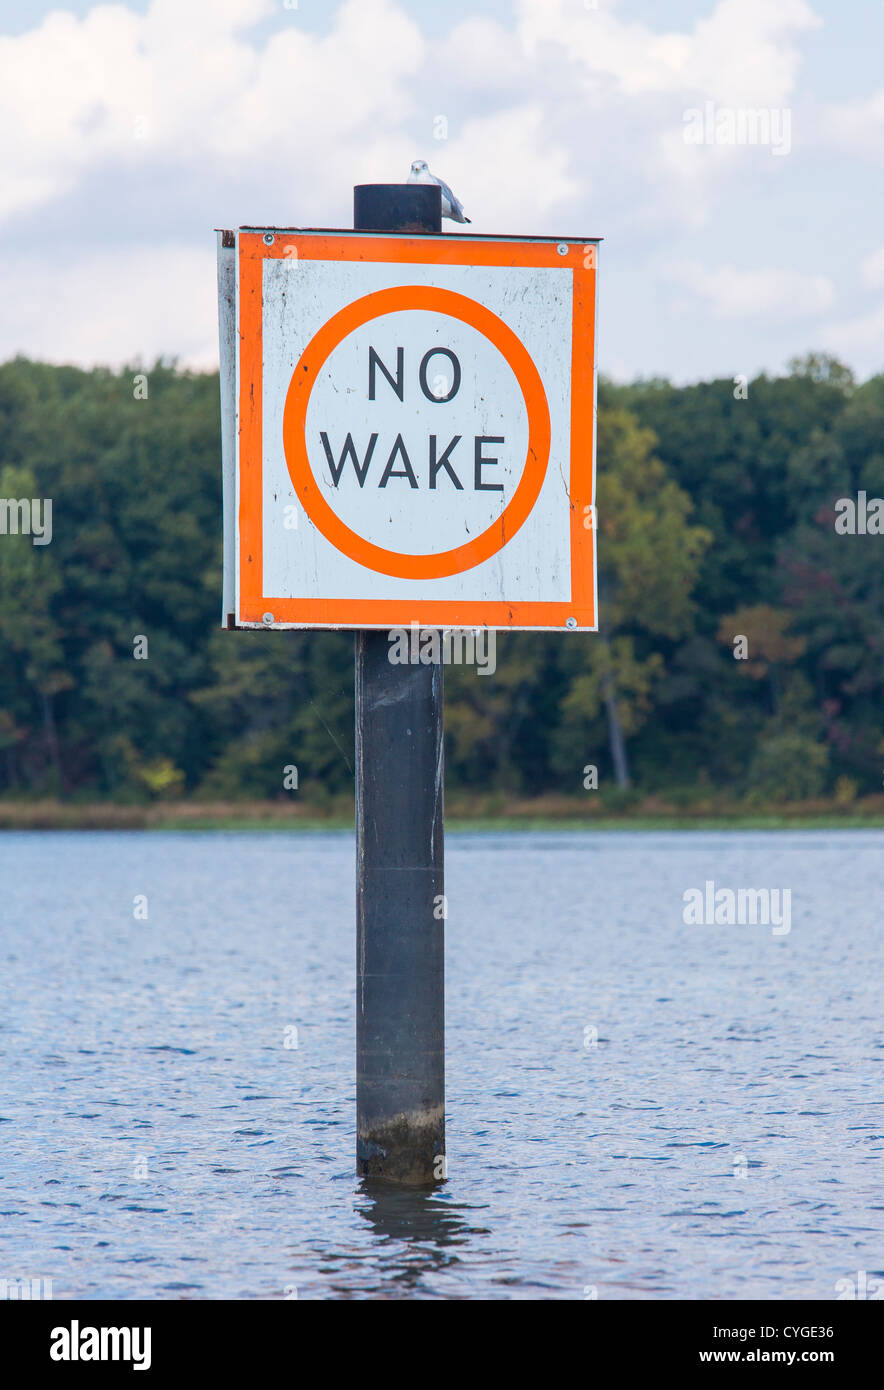 OCCOQUAN, Virginia, EE.UU. - No hay signos de reactivación en río Occoquan. Foto de stock